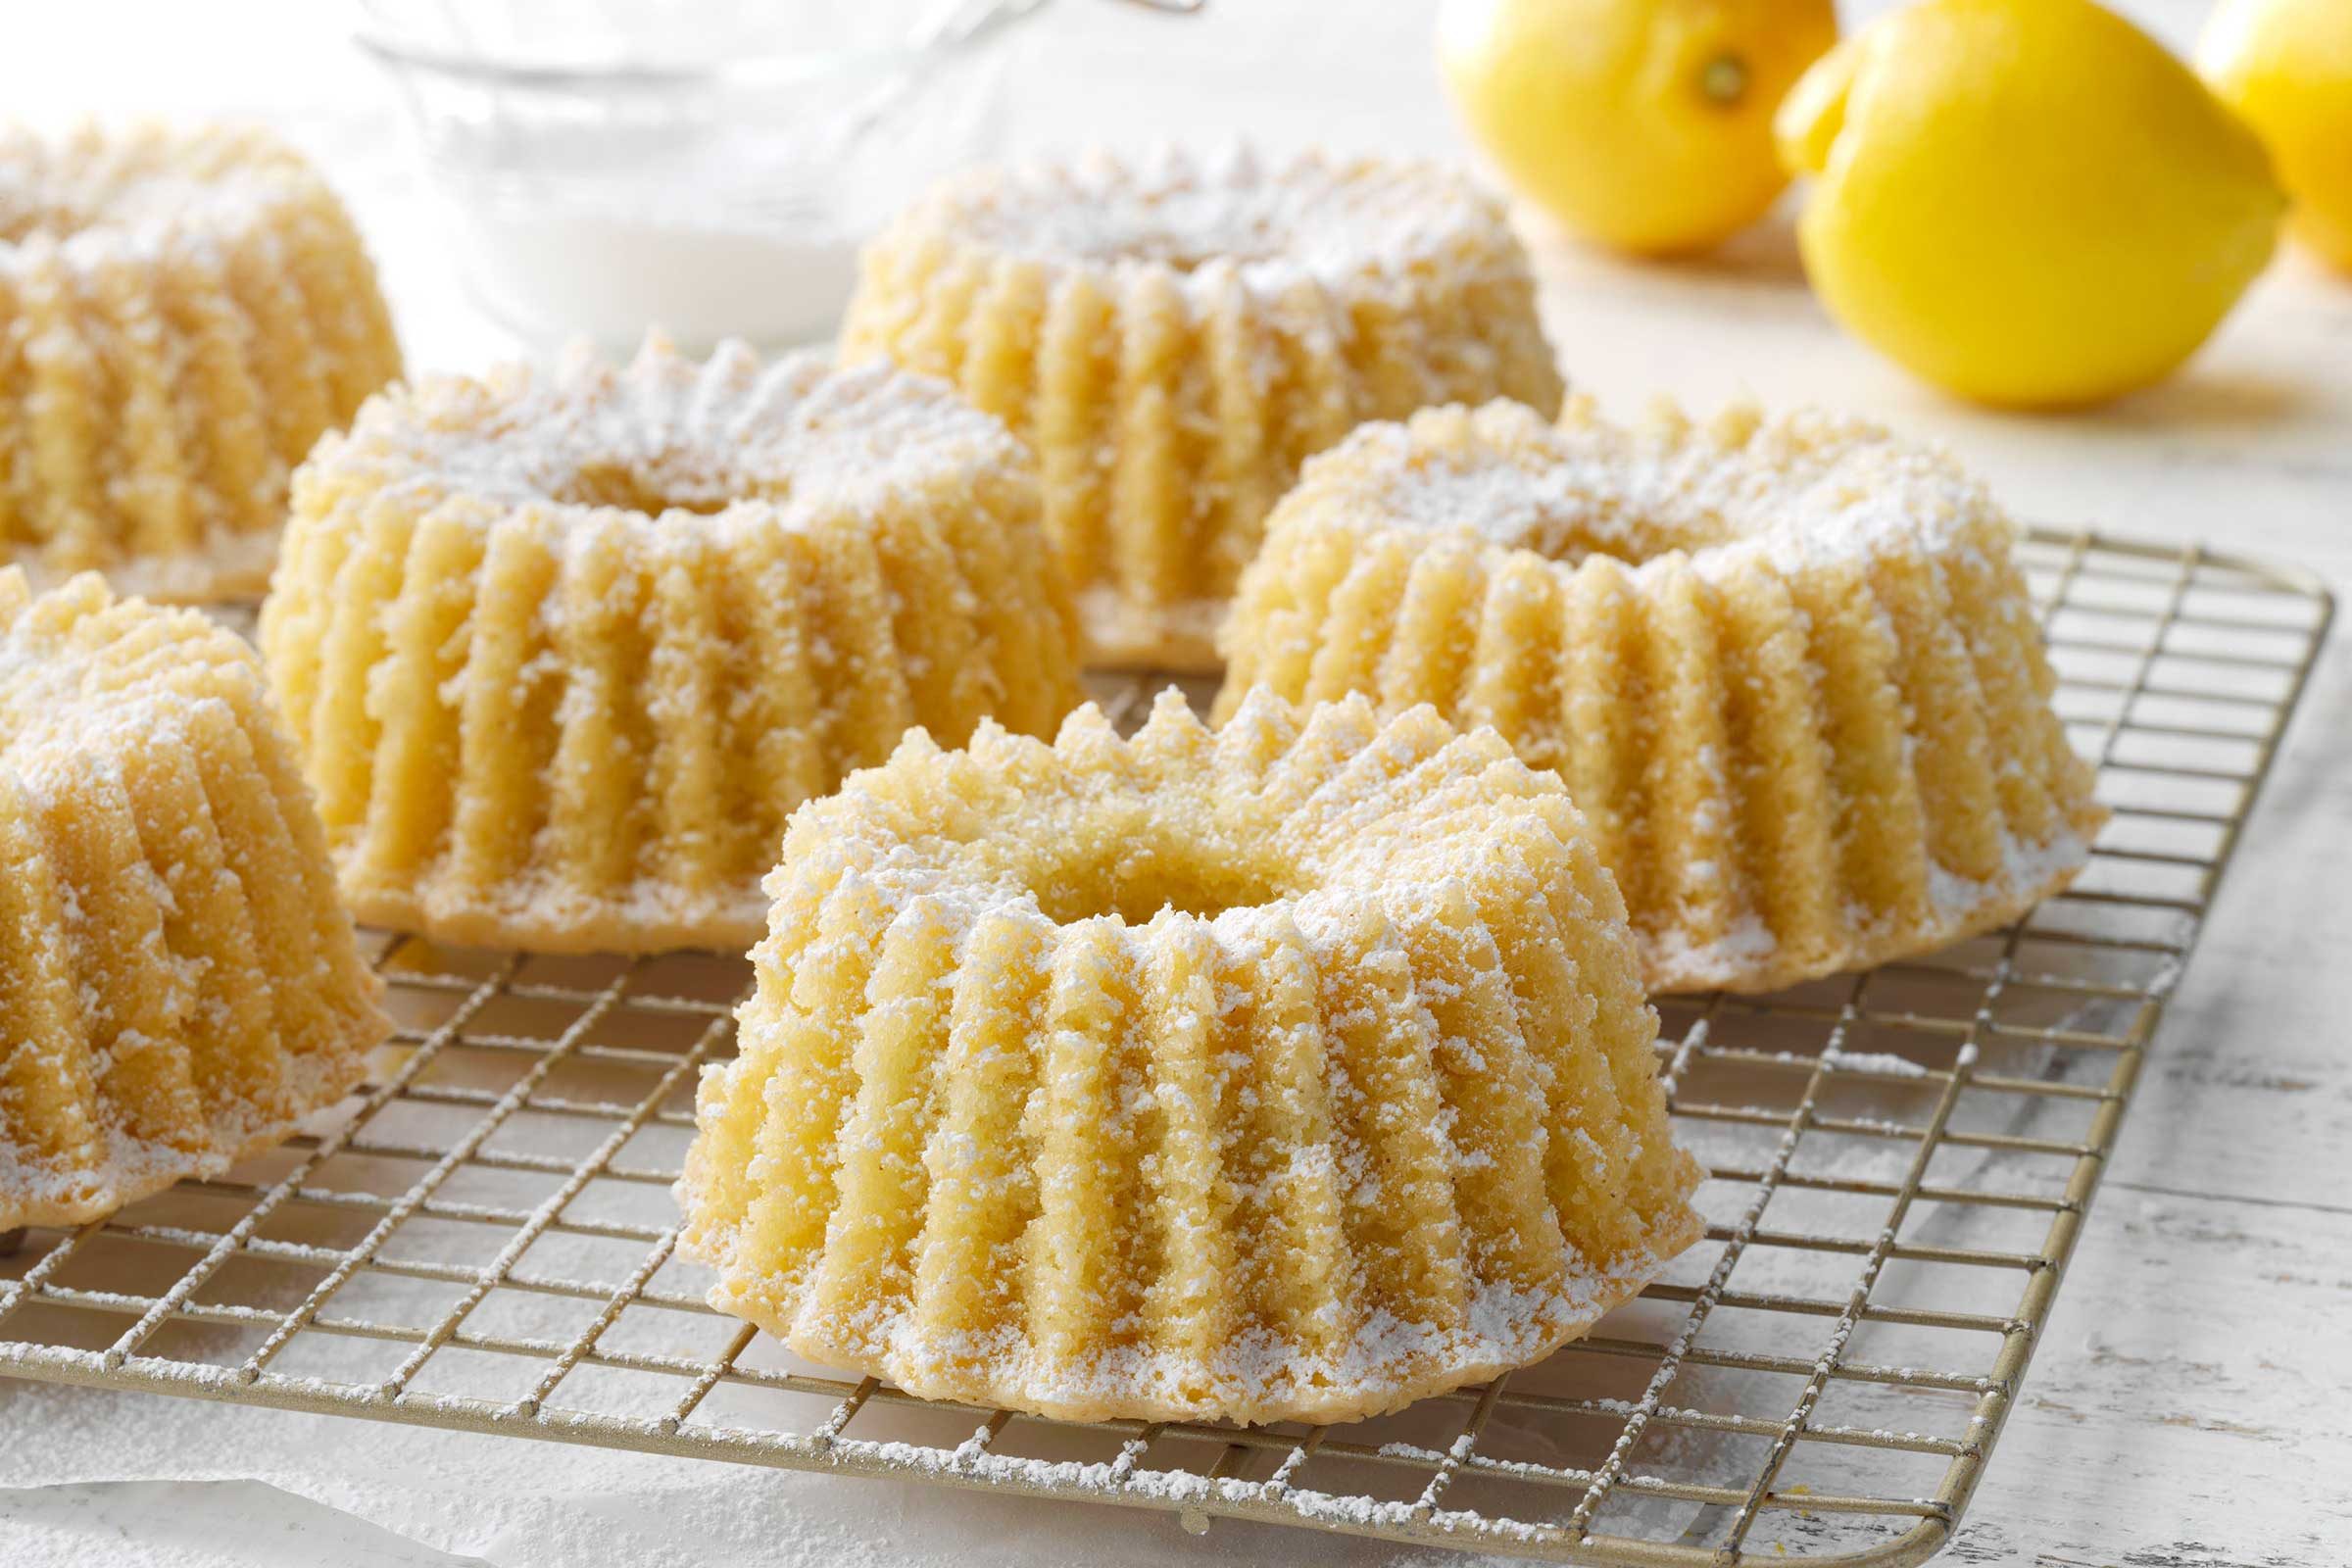 https://www.tasteofhome.com/wp-content/uploads/2023/04/TOHcom23_272737_DR_03_23_6b-Gluten-Free-Lemon-Cake.jpg